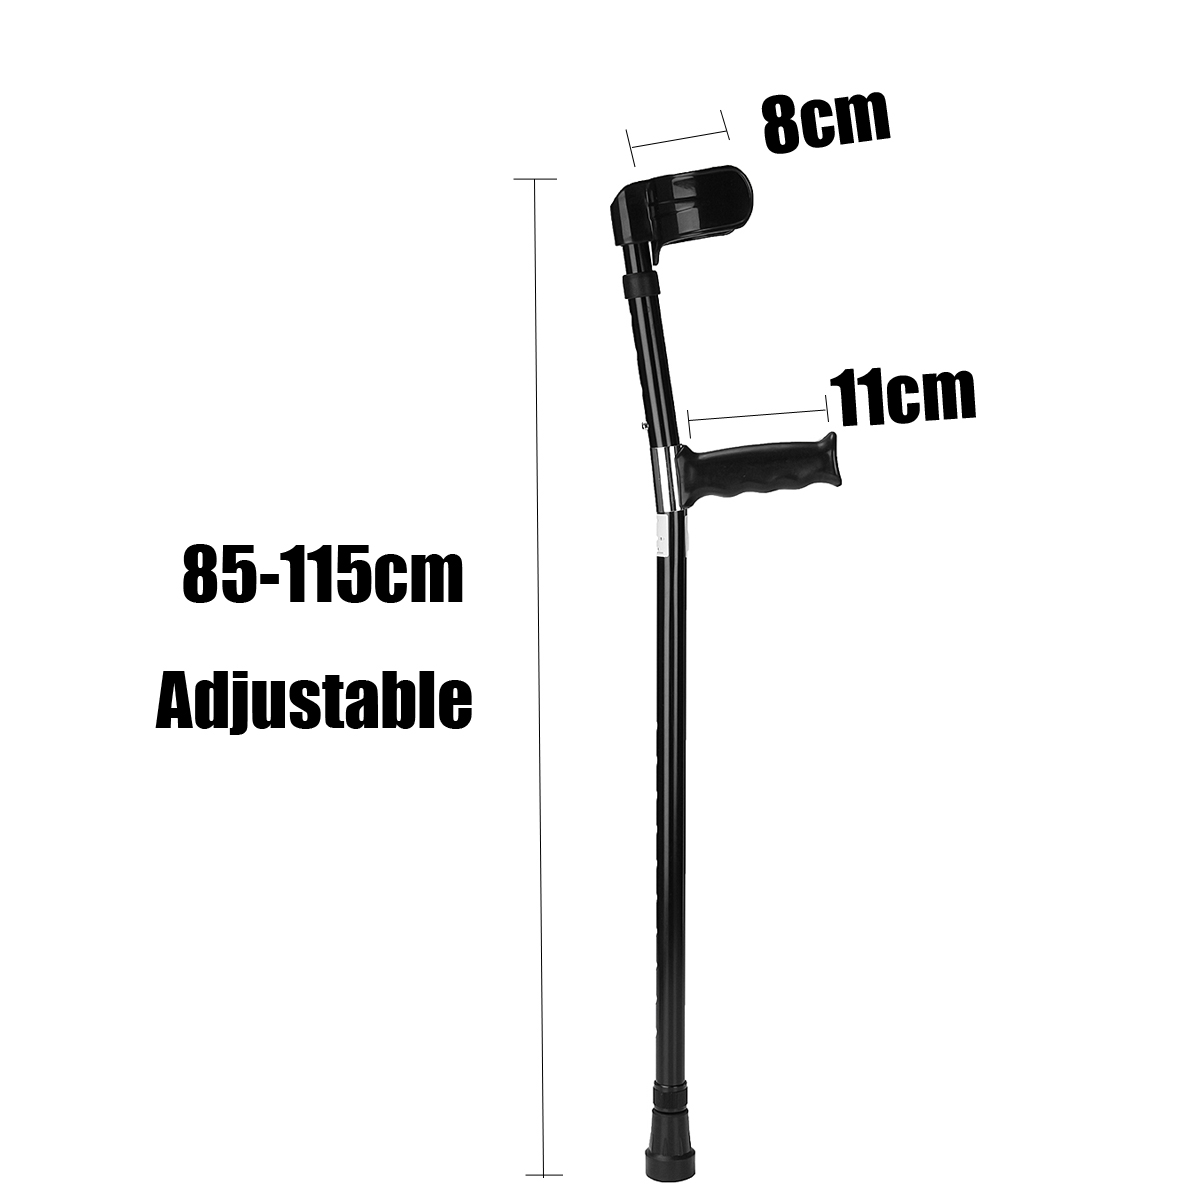 A-Pair-of-Adjustable-Aluminum-Alloy-Armpit-Crutches-Forearm-Crutches-Elbow-Crutches-Climbing-Sticks-1645522-7